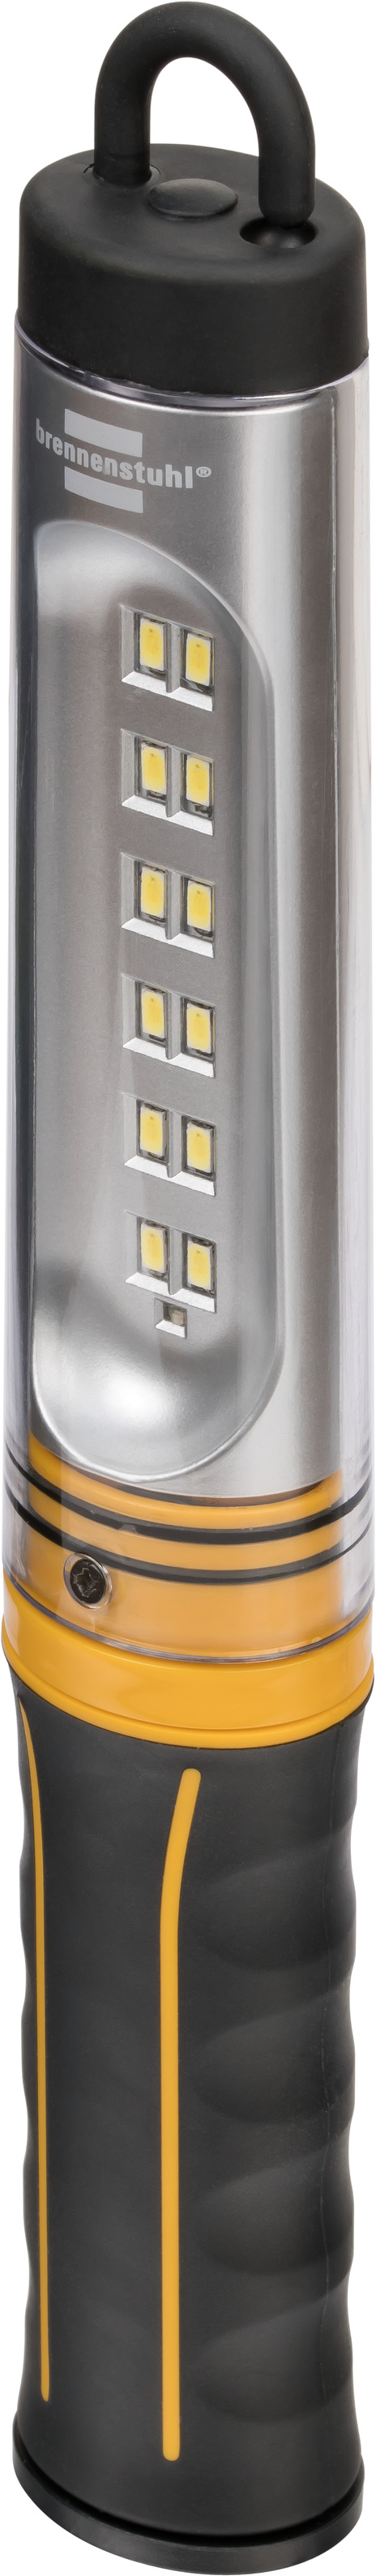 Brennenstuhl LuxPremium lampe torche LED avec mise au point sur batterie TL  800 AF IP67, lampe rechargeable avec LED CREE, 860 lm, 320 m, focalisable,  max.19 h, câble de chargement USB inclus